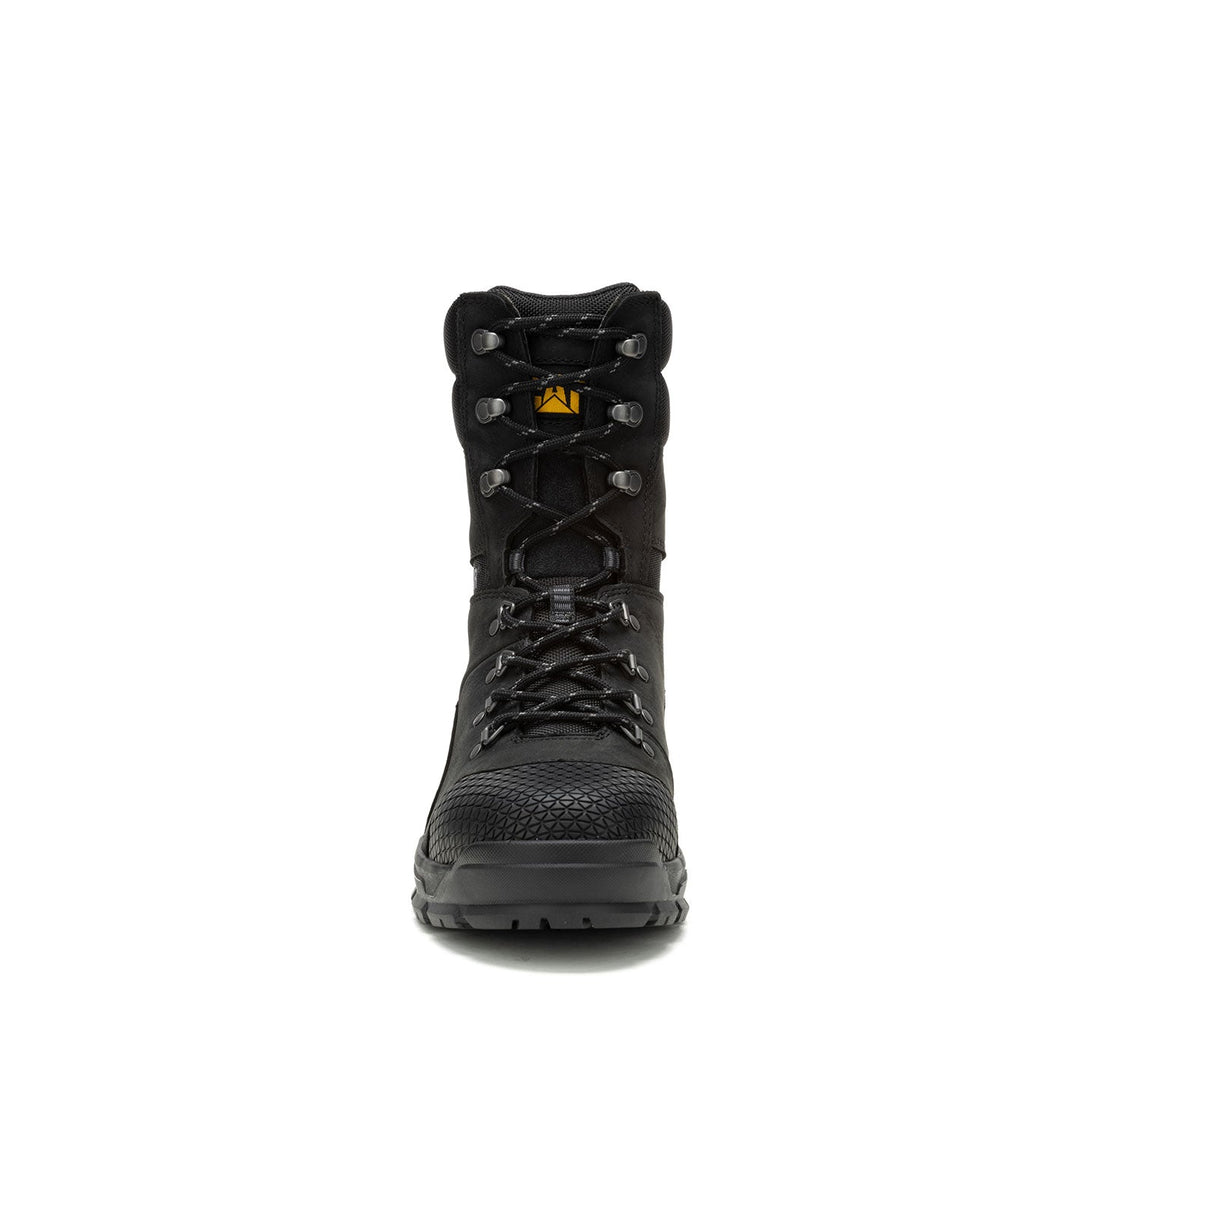 Caterpillar Accomplice Men's 8 X Steel-Toe Work Boots Wp P91641-3